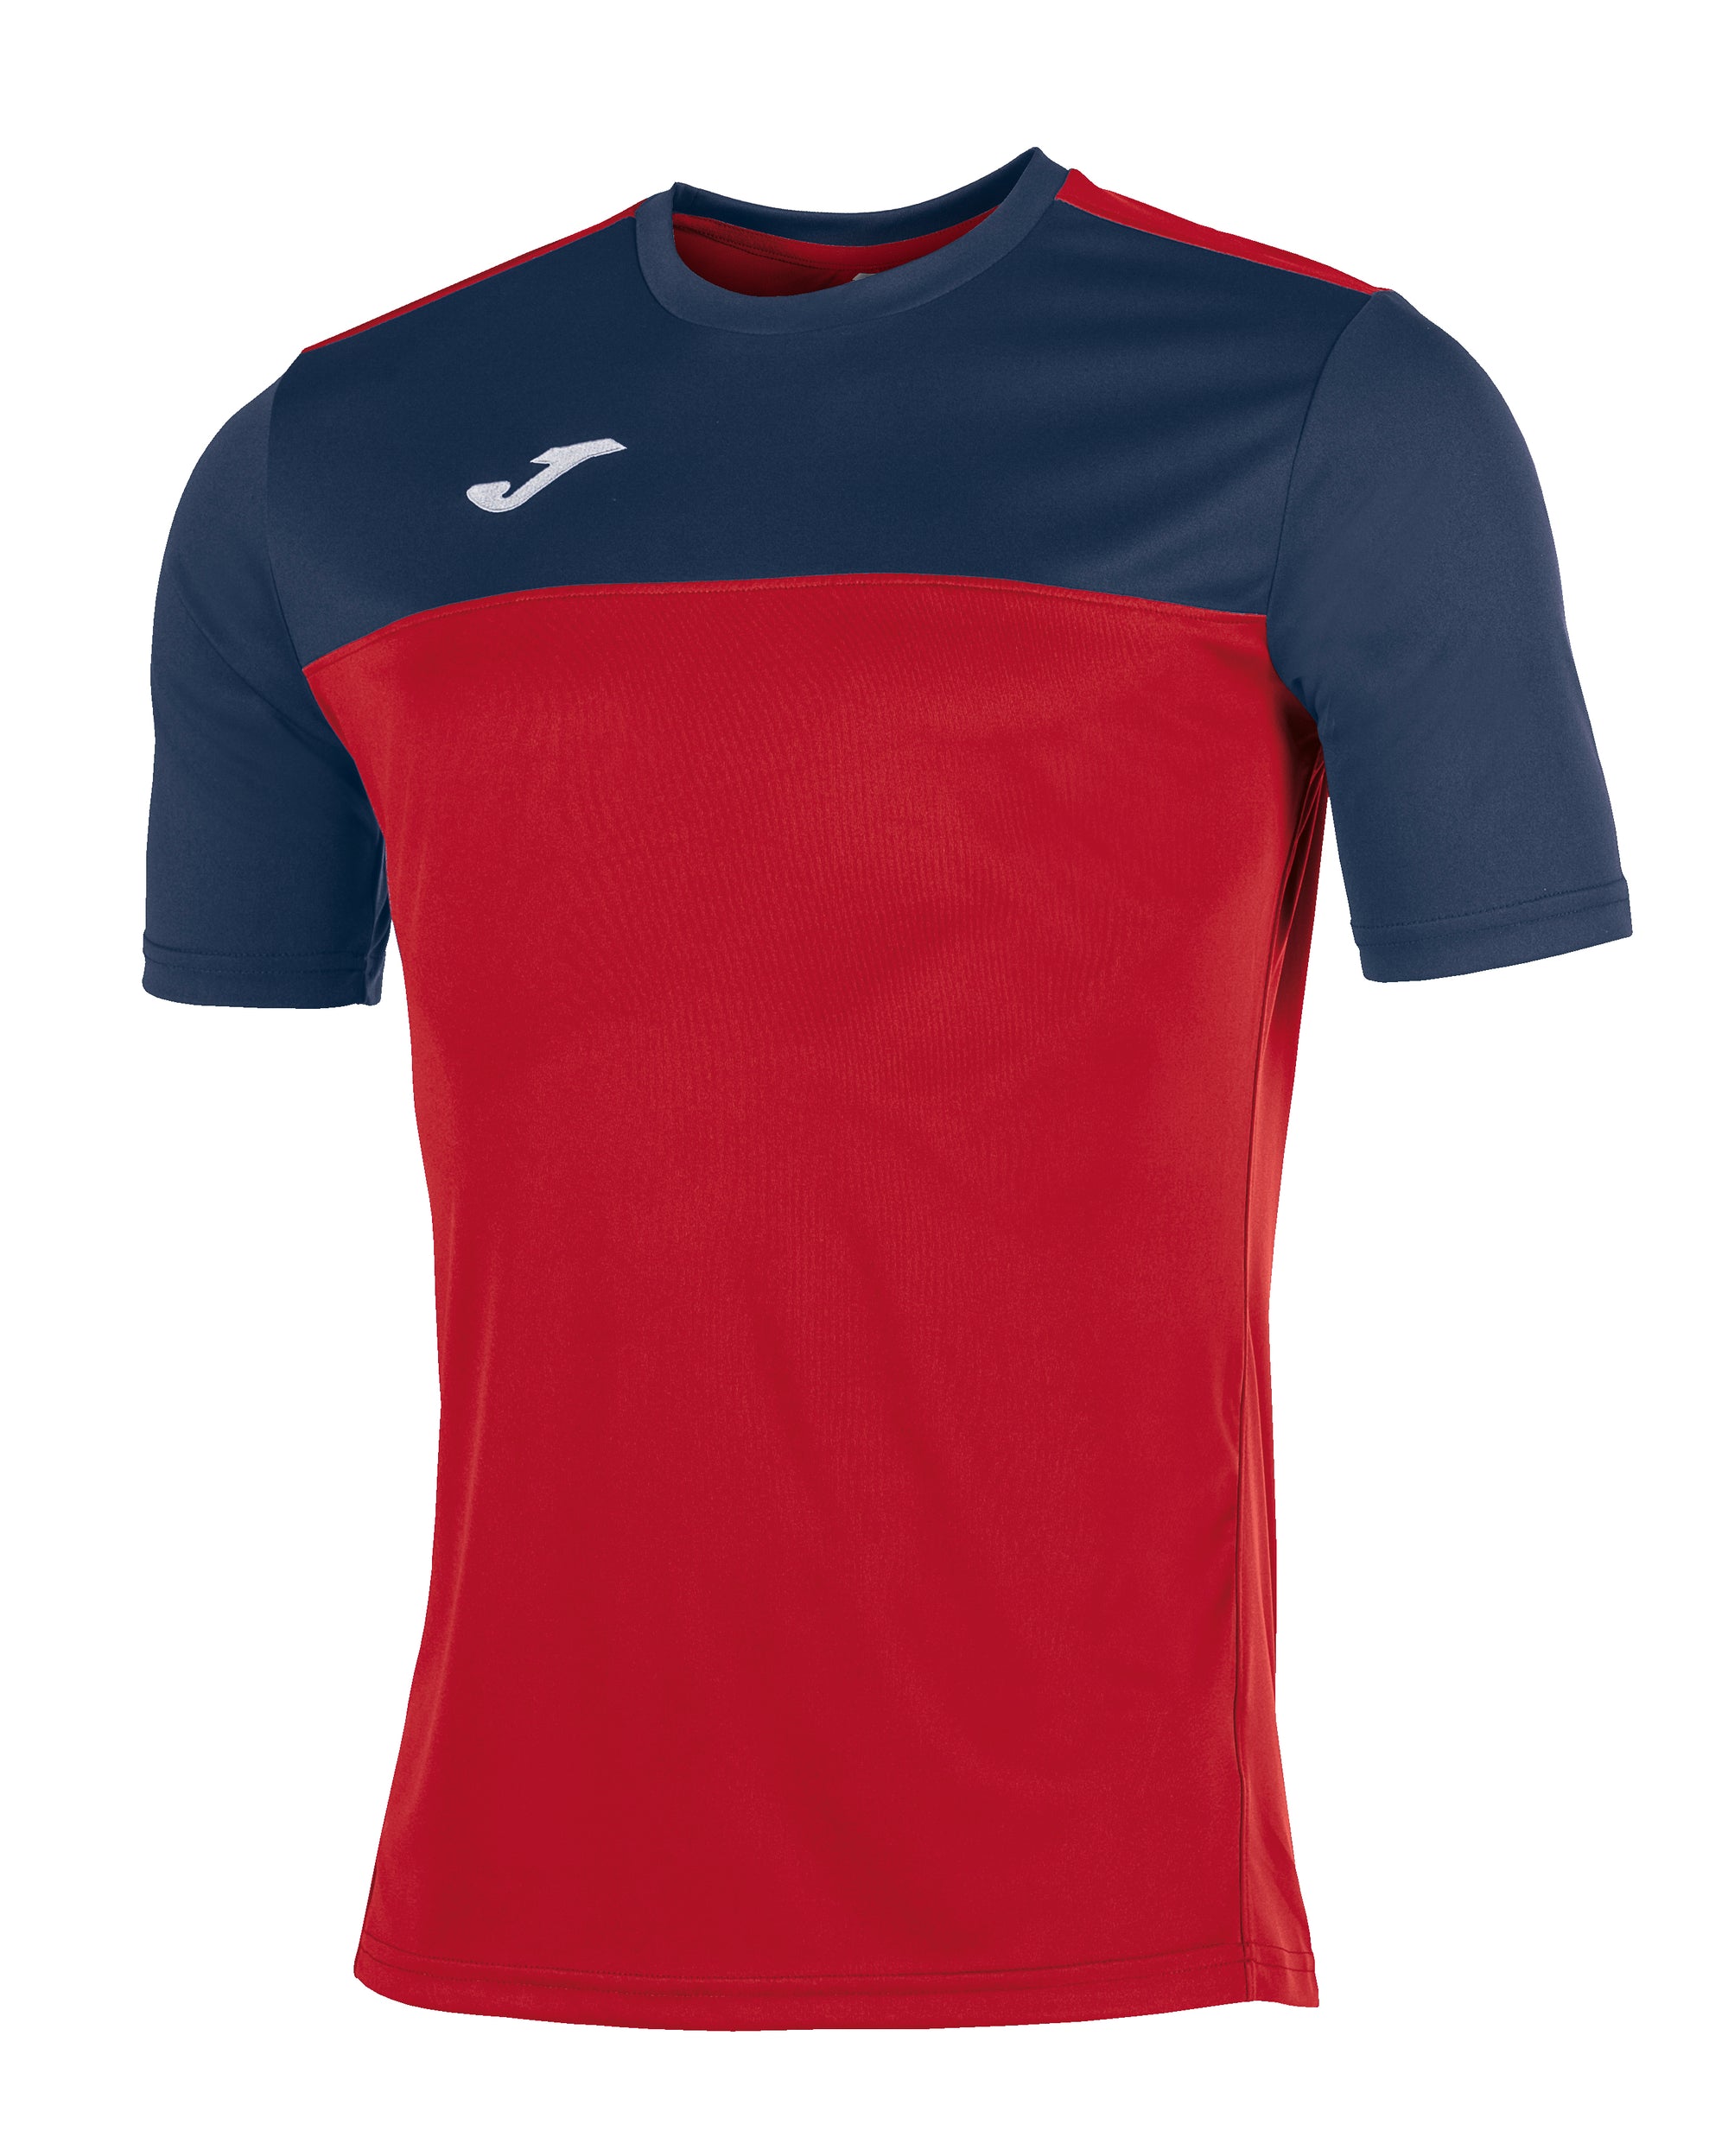 Joma Winner Short Sleeved T-Shirt - Red/Dark Navy